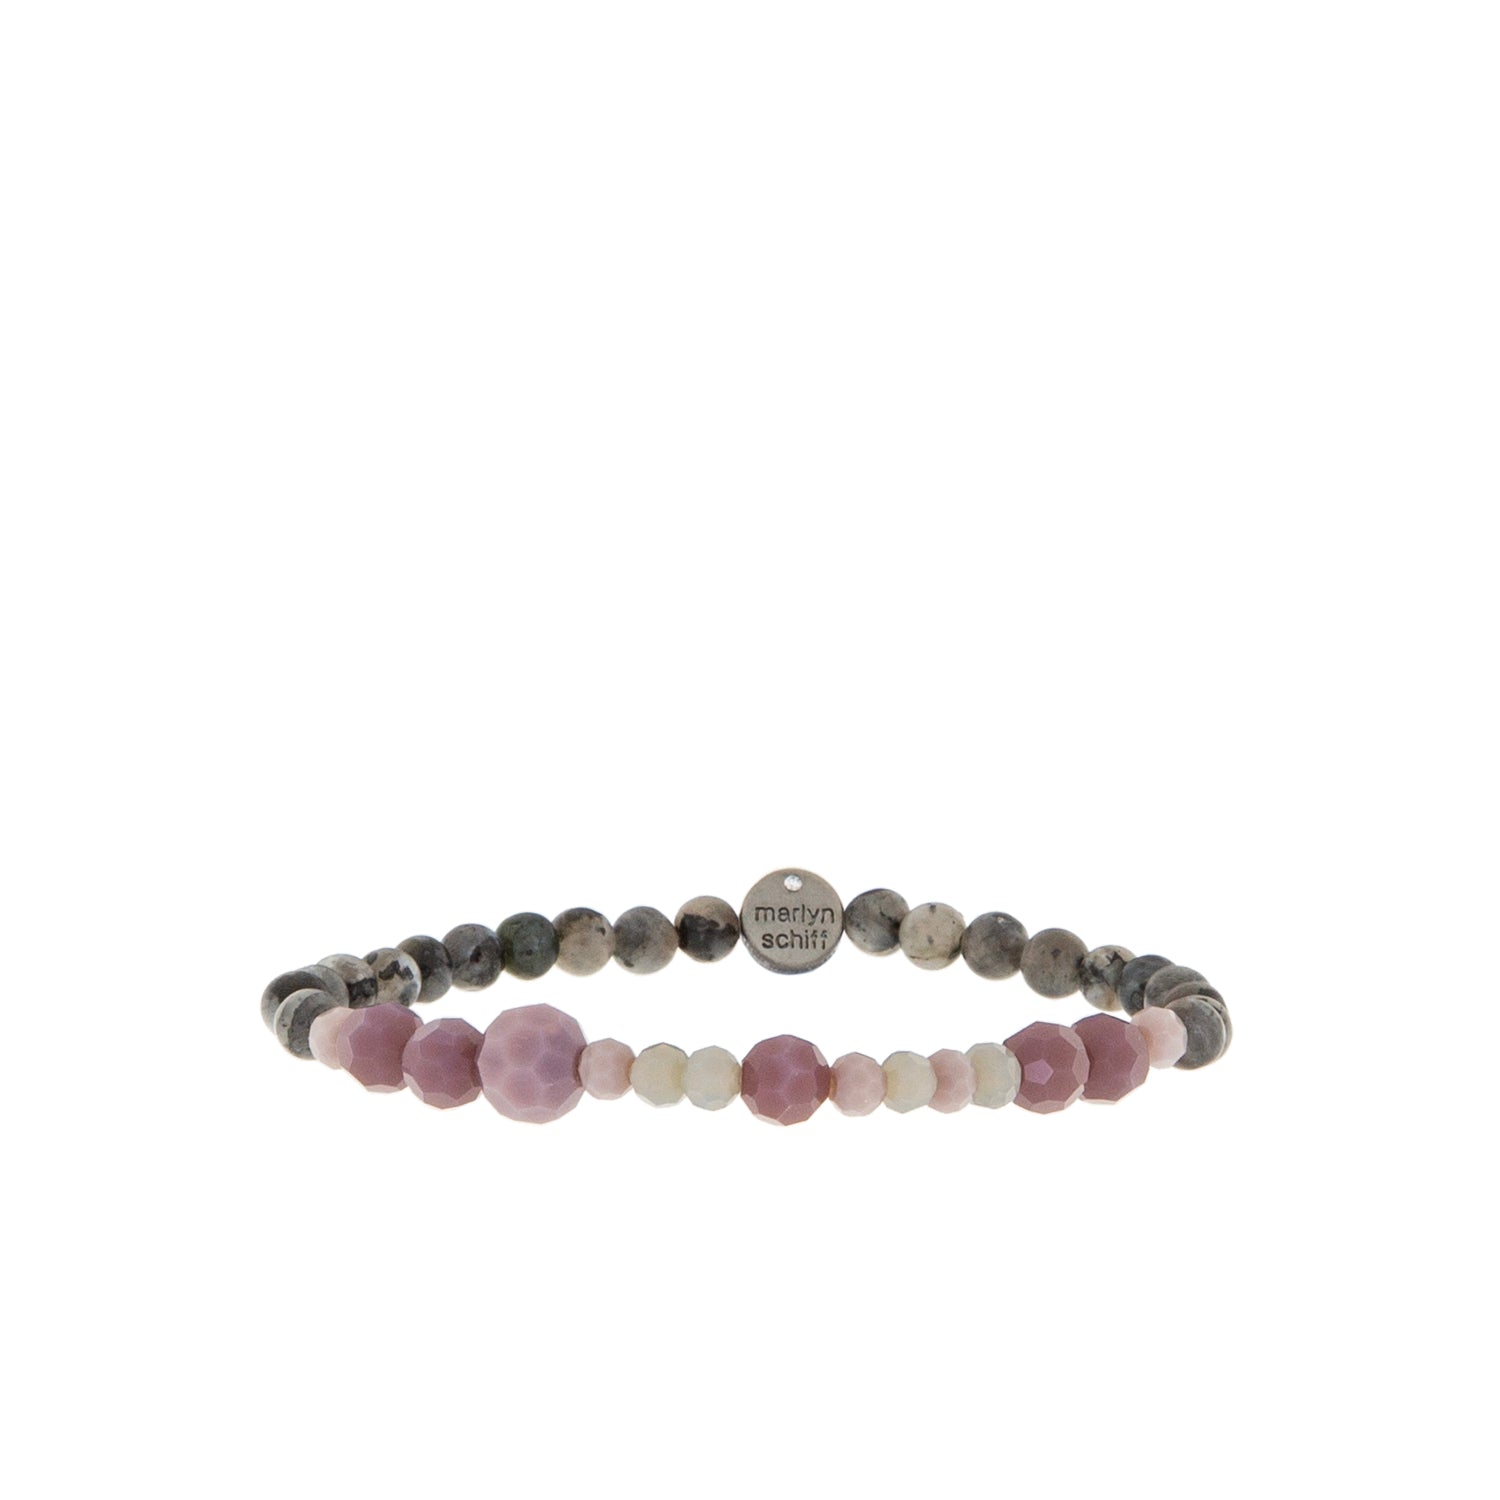 stone & mixed glass bead stretch bracelet